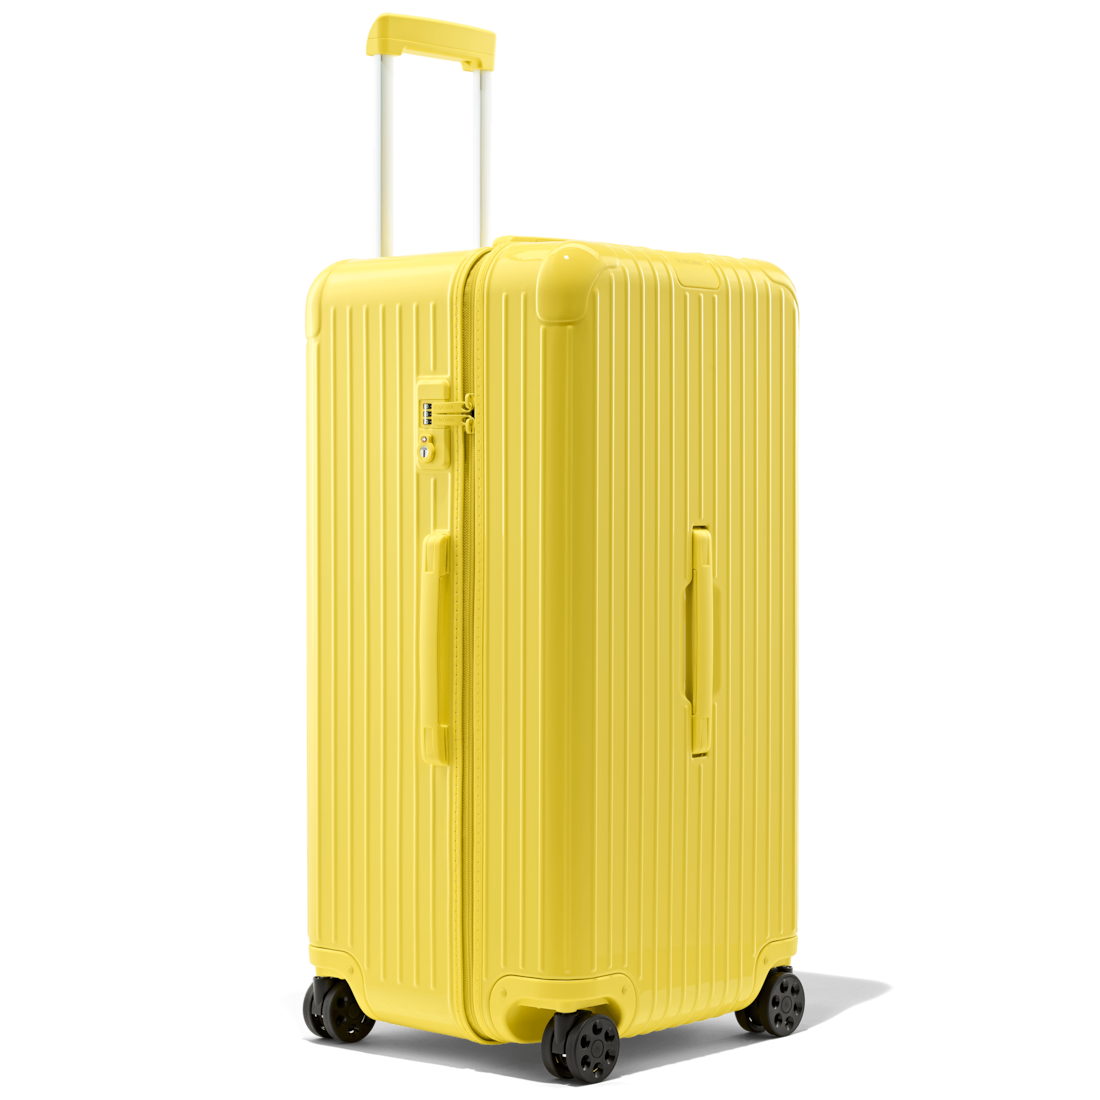 rimowa suitcase large